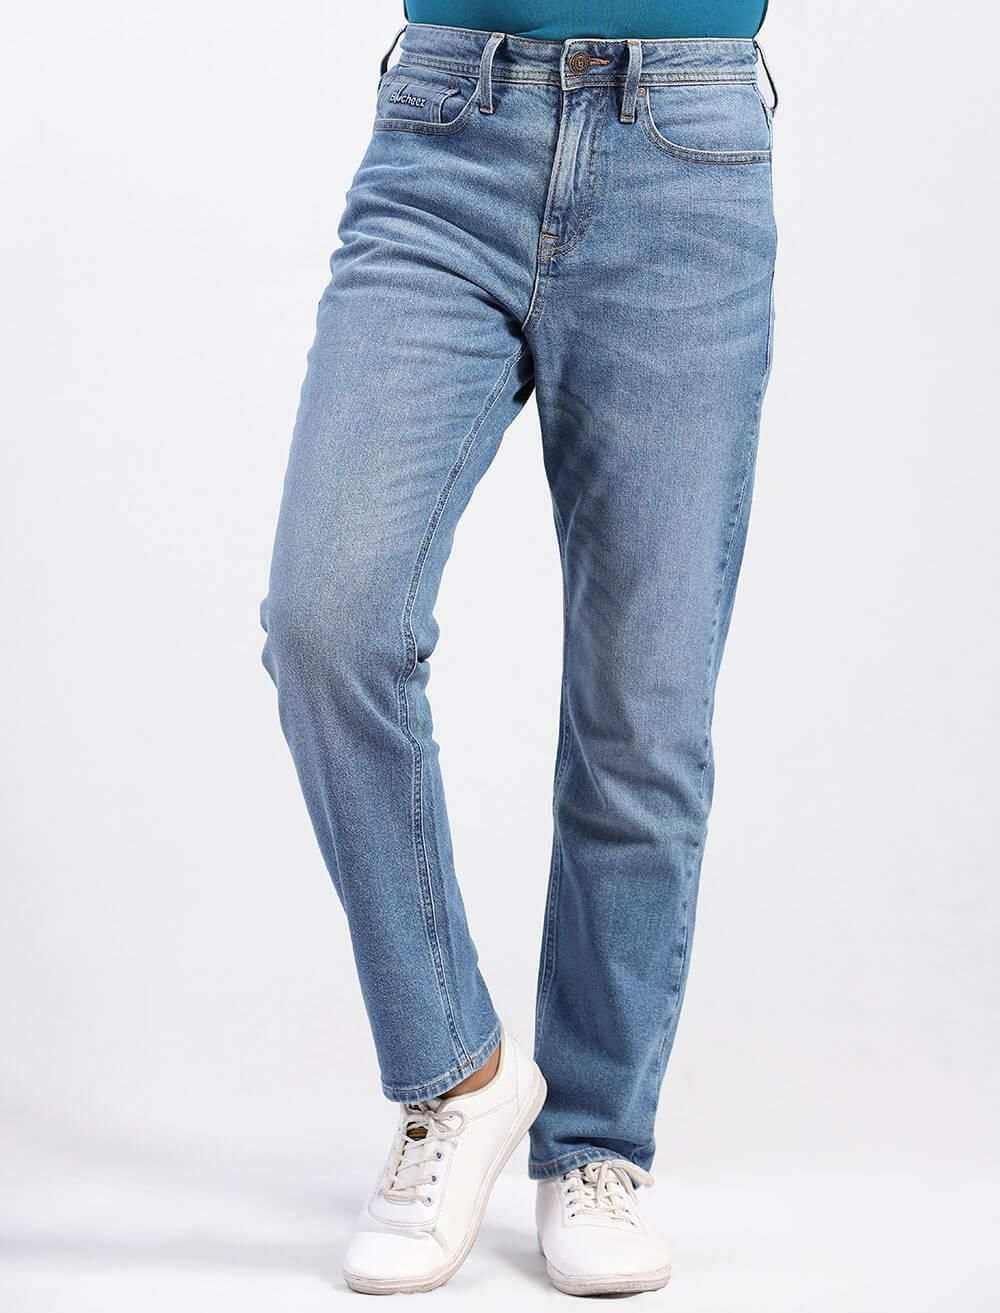 Comfort-fit Jeans - Blucheez